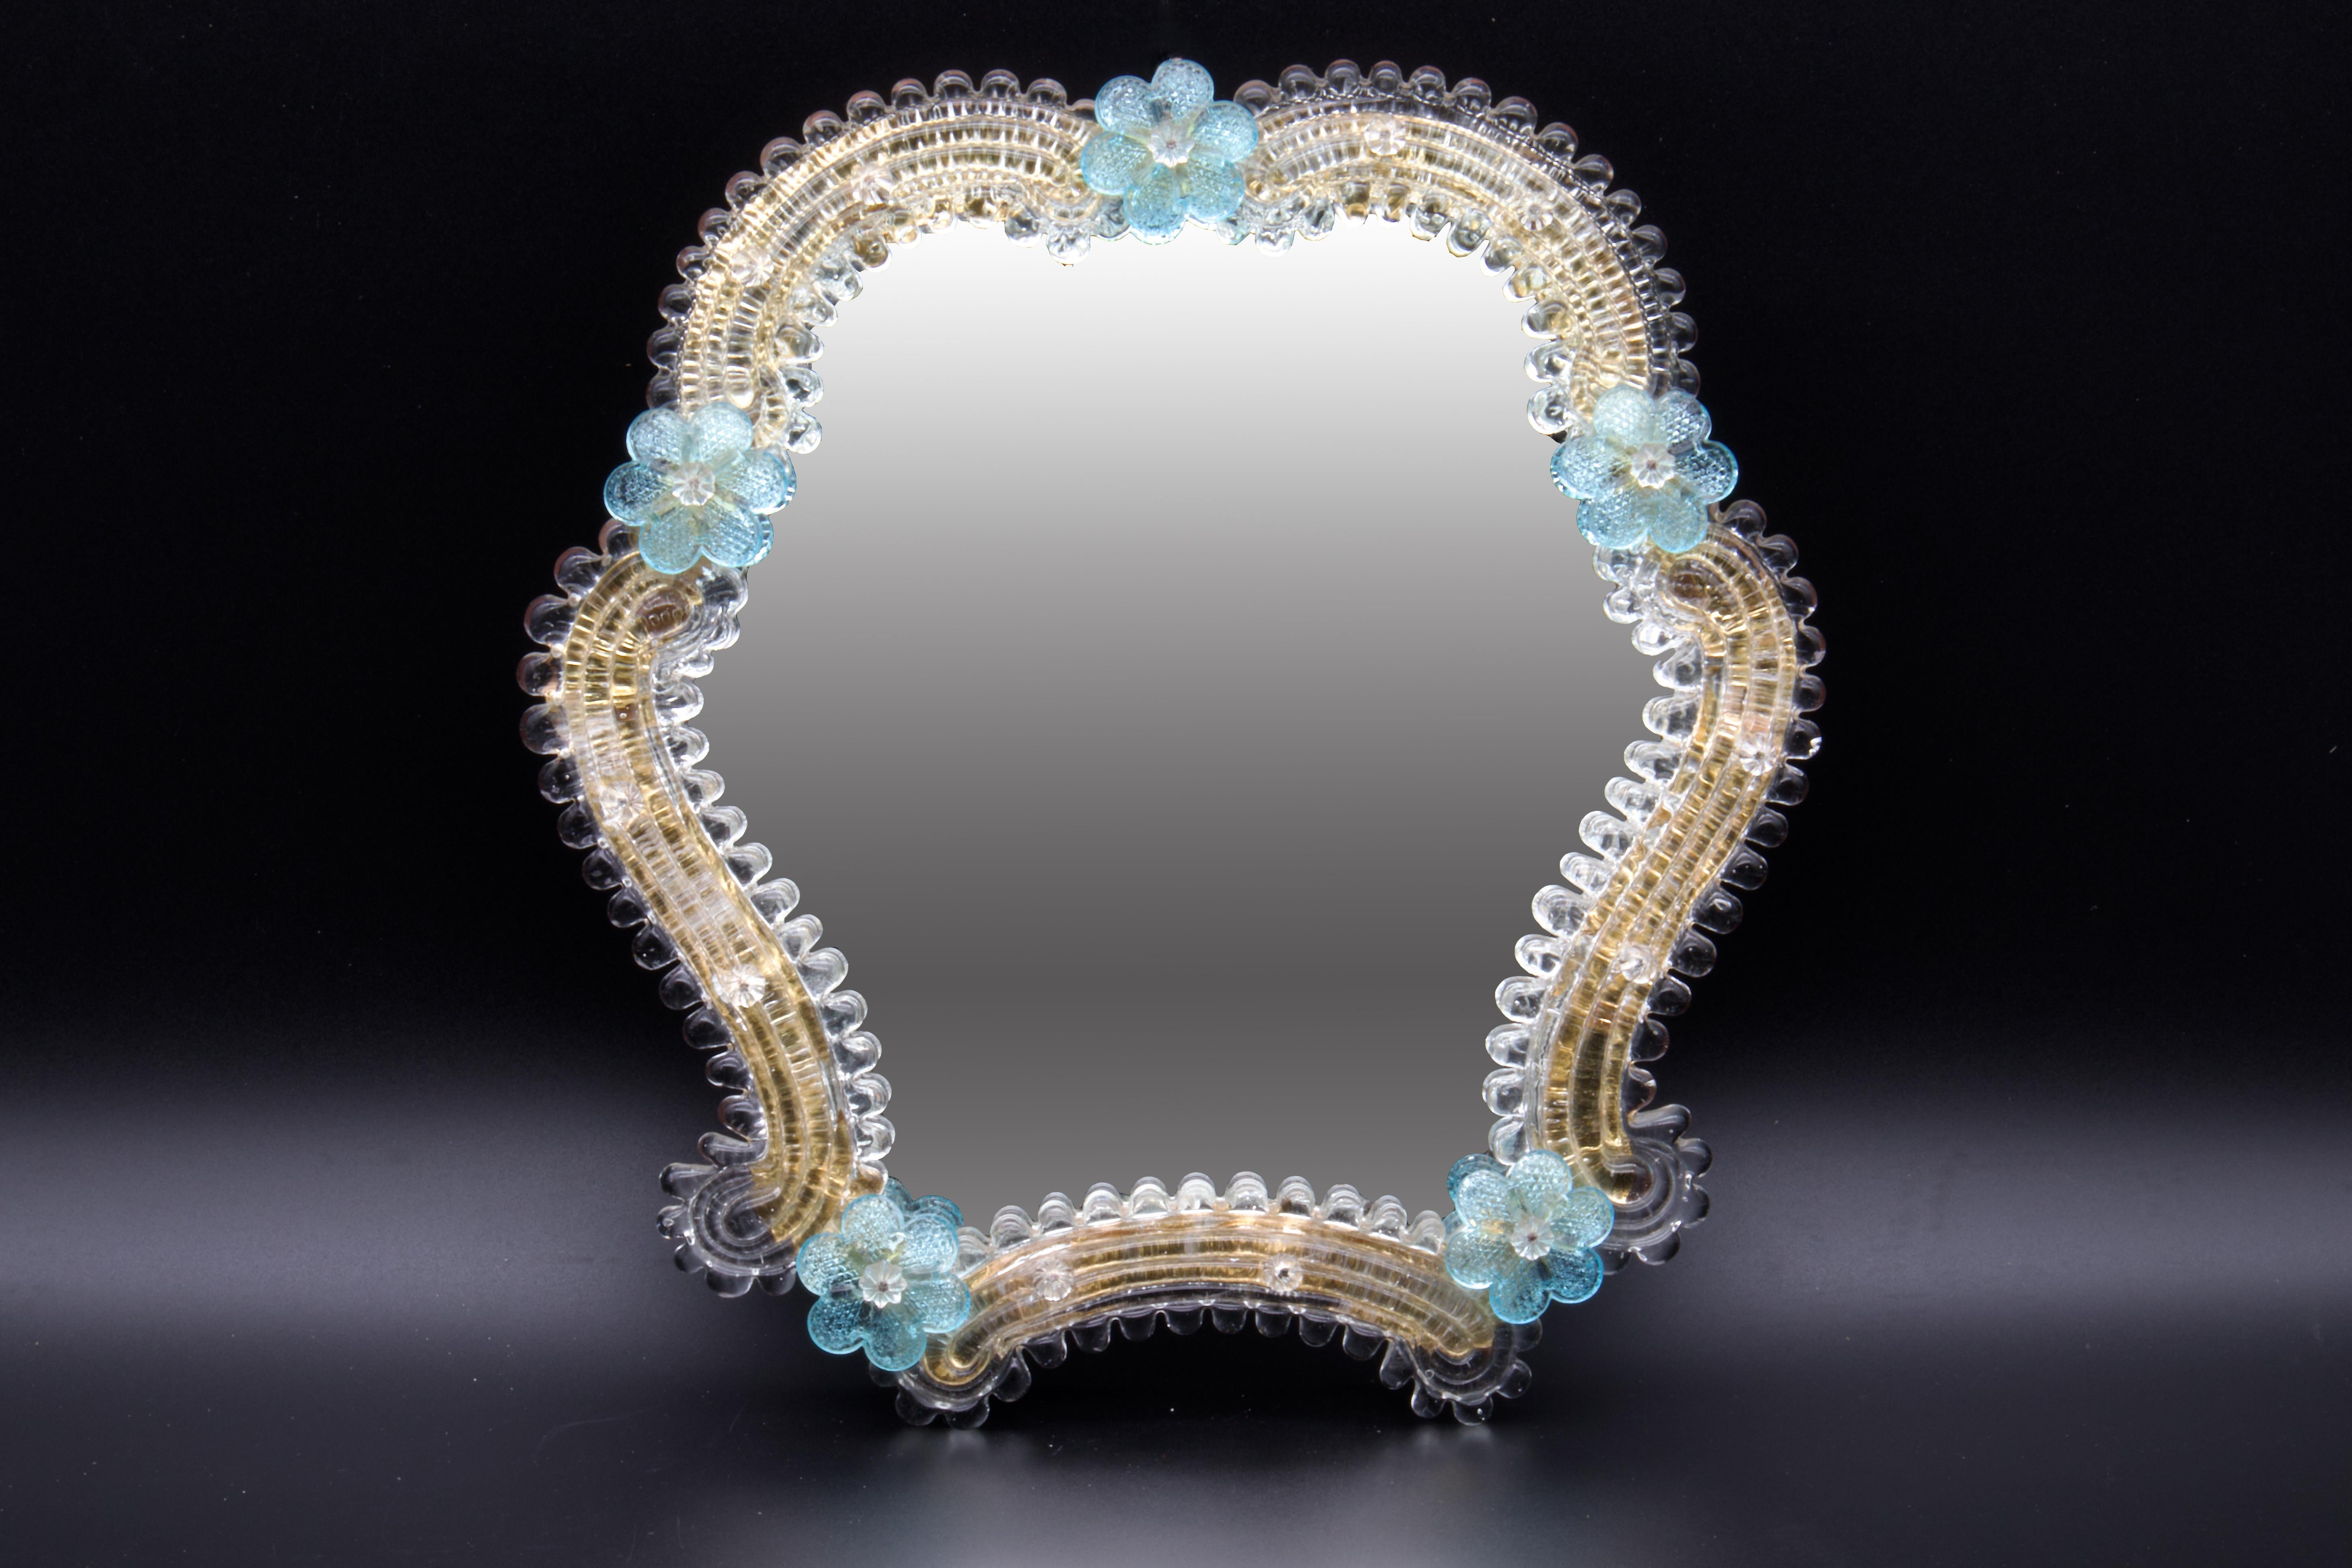 Stunning Murano glass mirror